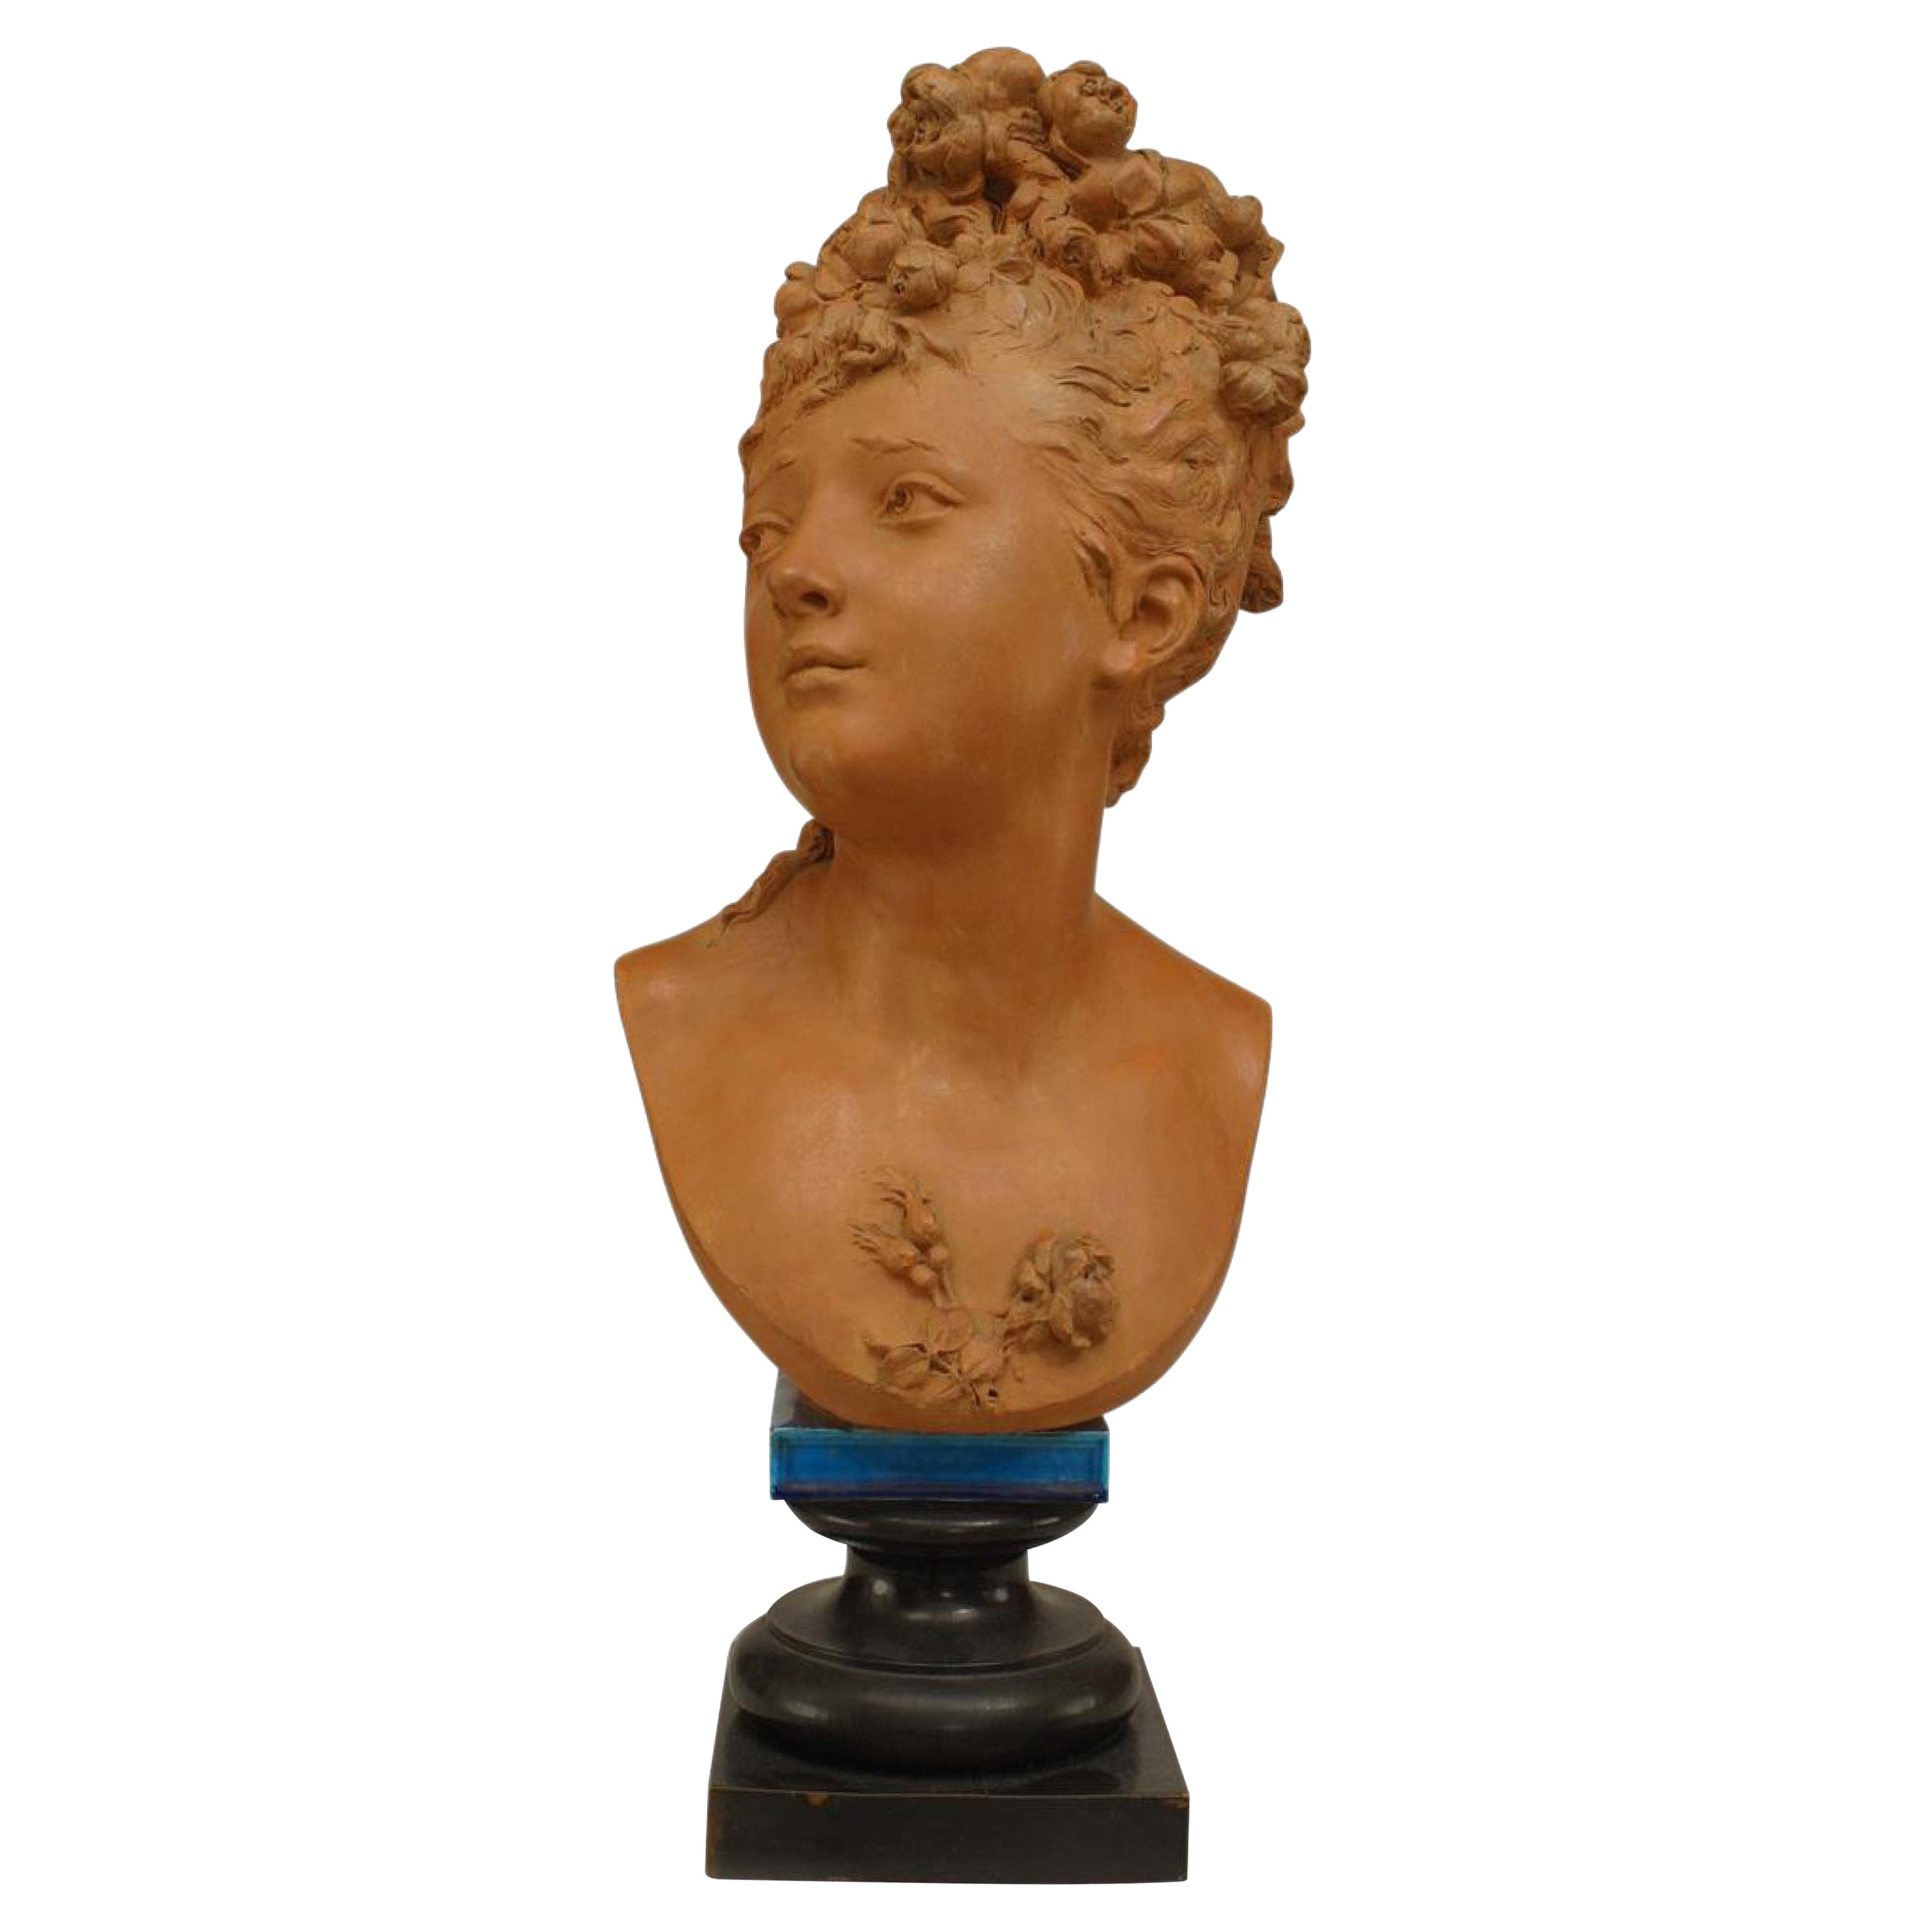 Buste de dame victorien en terre cuite du XIXe siècle signé Belleuse